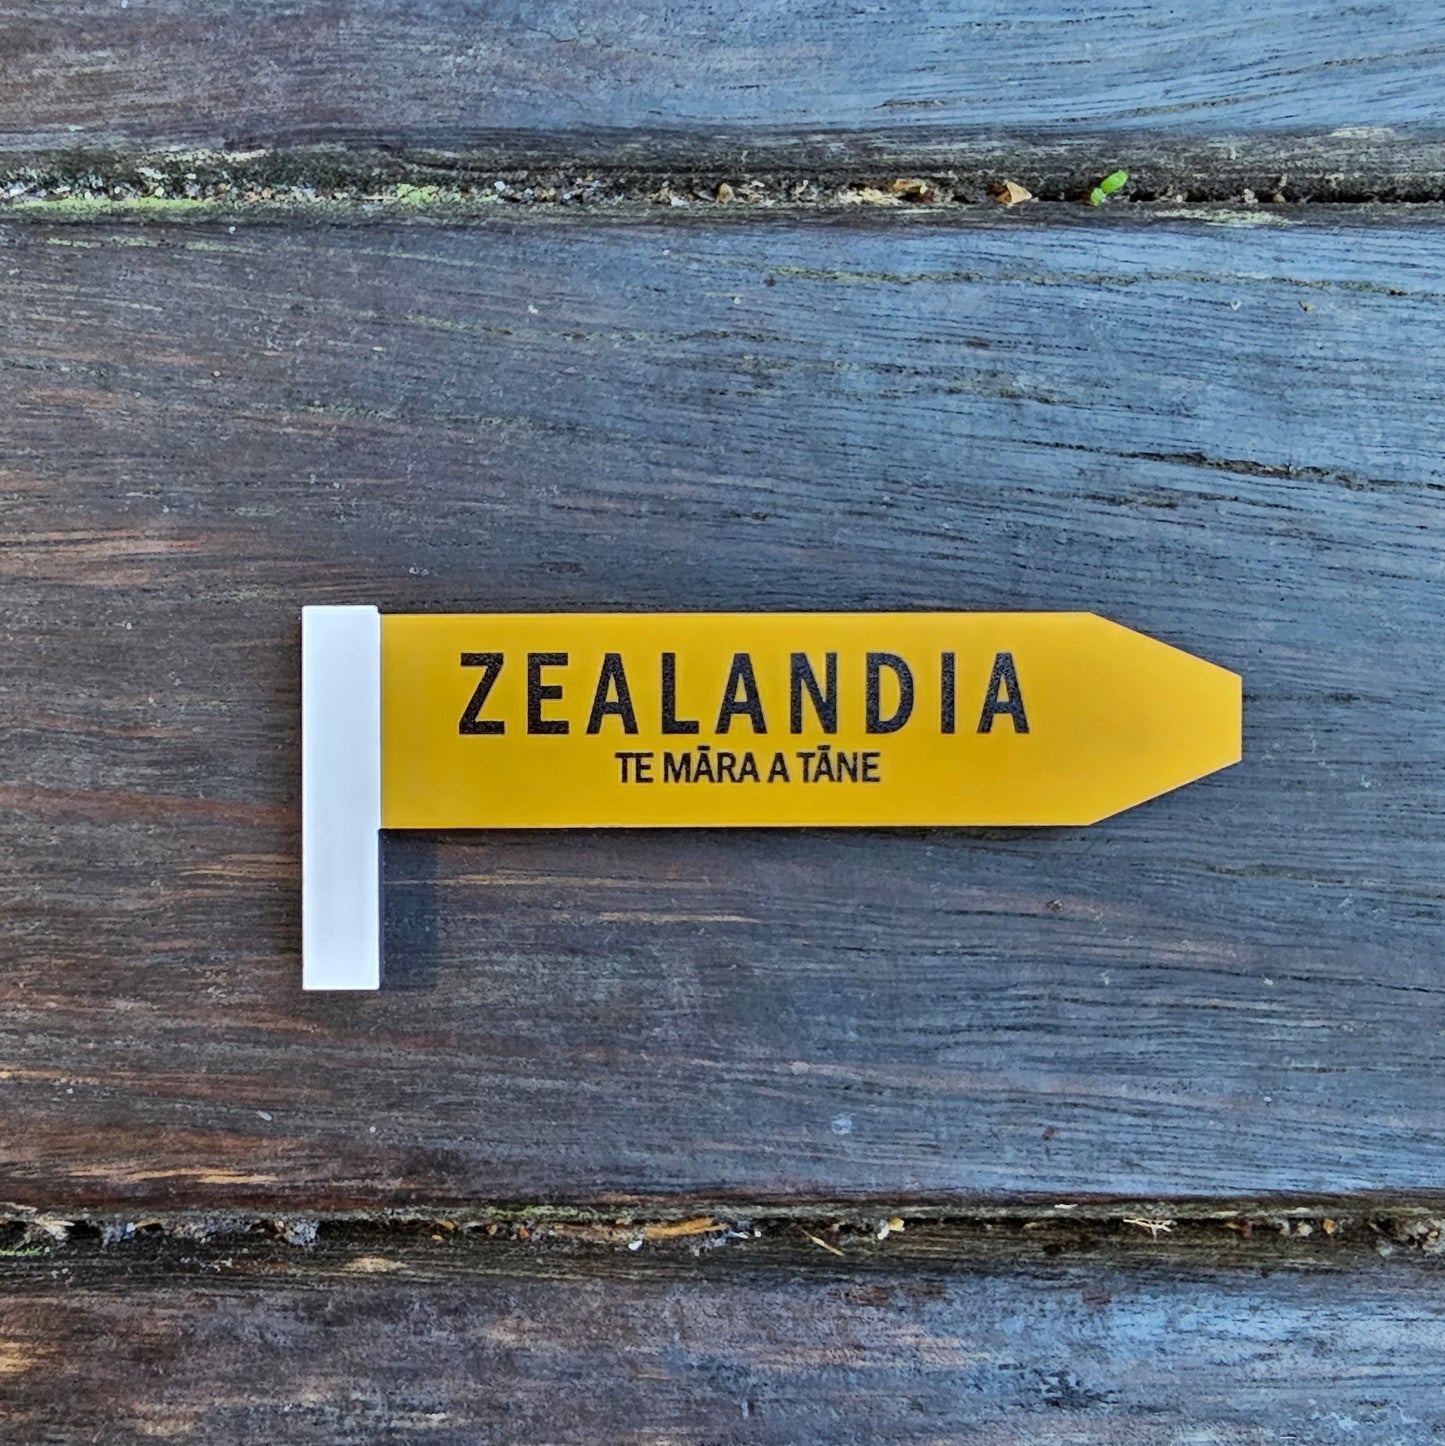 Zealandia Road Sign Magnet